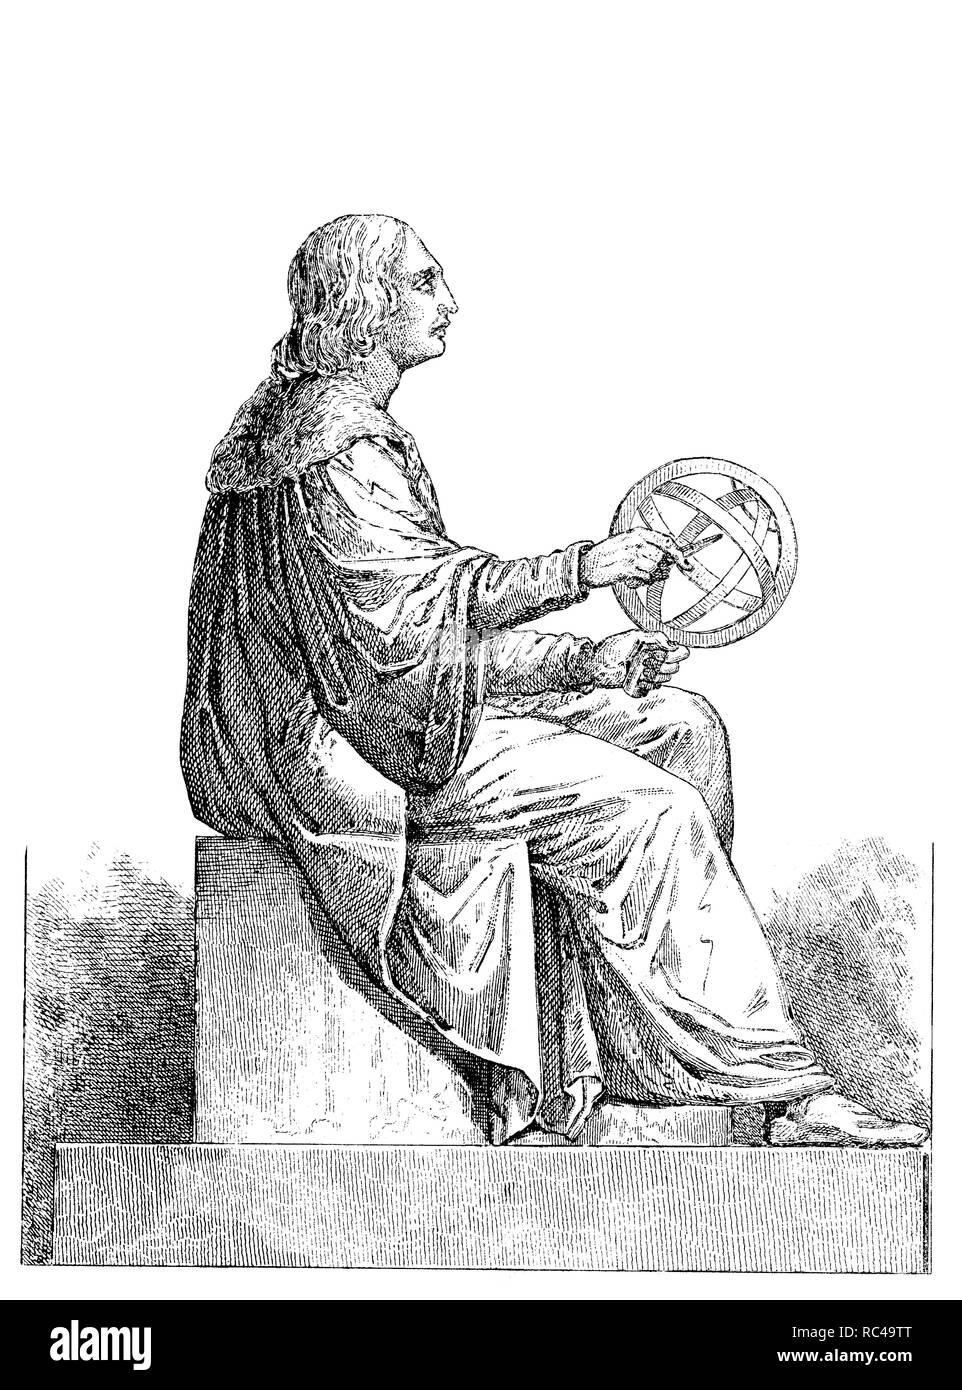 Polen. Skulptur von Nikolaus Kopernikus (1473-1543) in Warschau. Der polnische Astronom der Renaissance, die das heliozentrische Theorie des Sonnensystems formuliert, ein astrolabium. Radierung 1850. Stockfoto